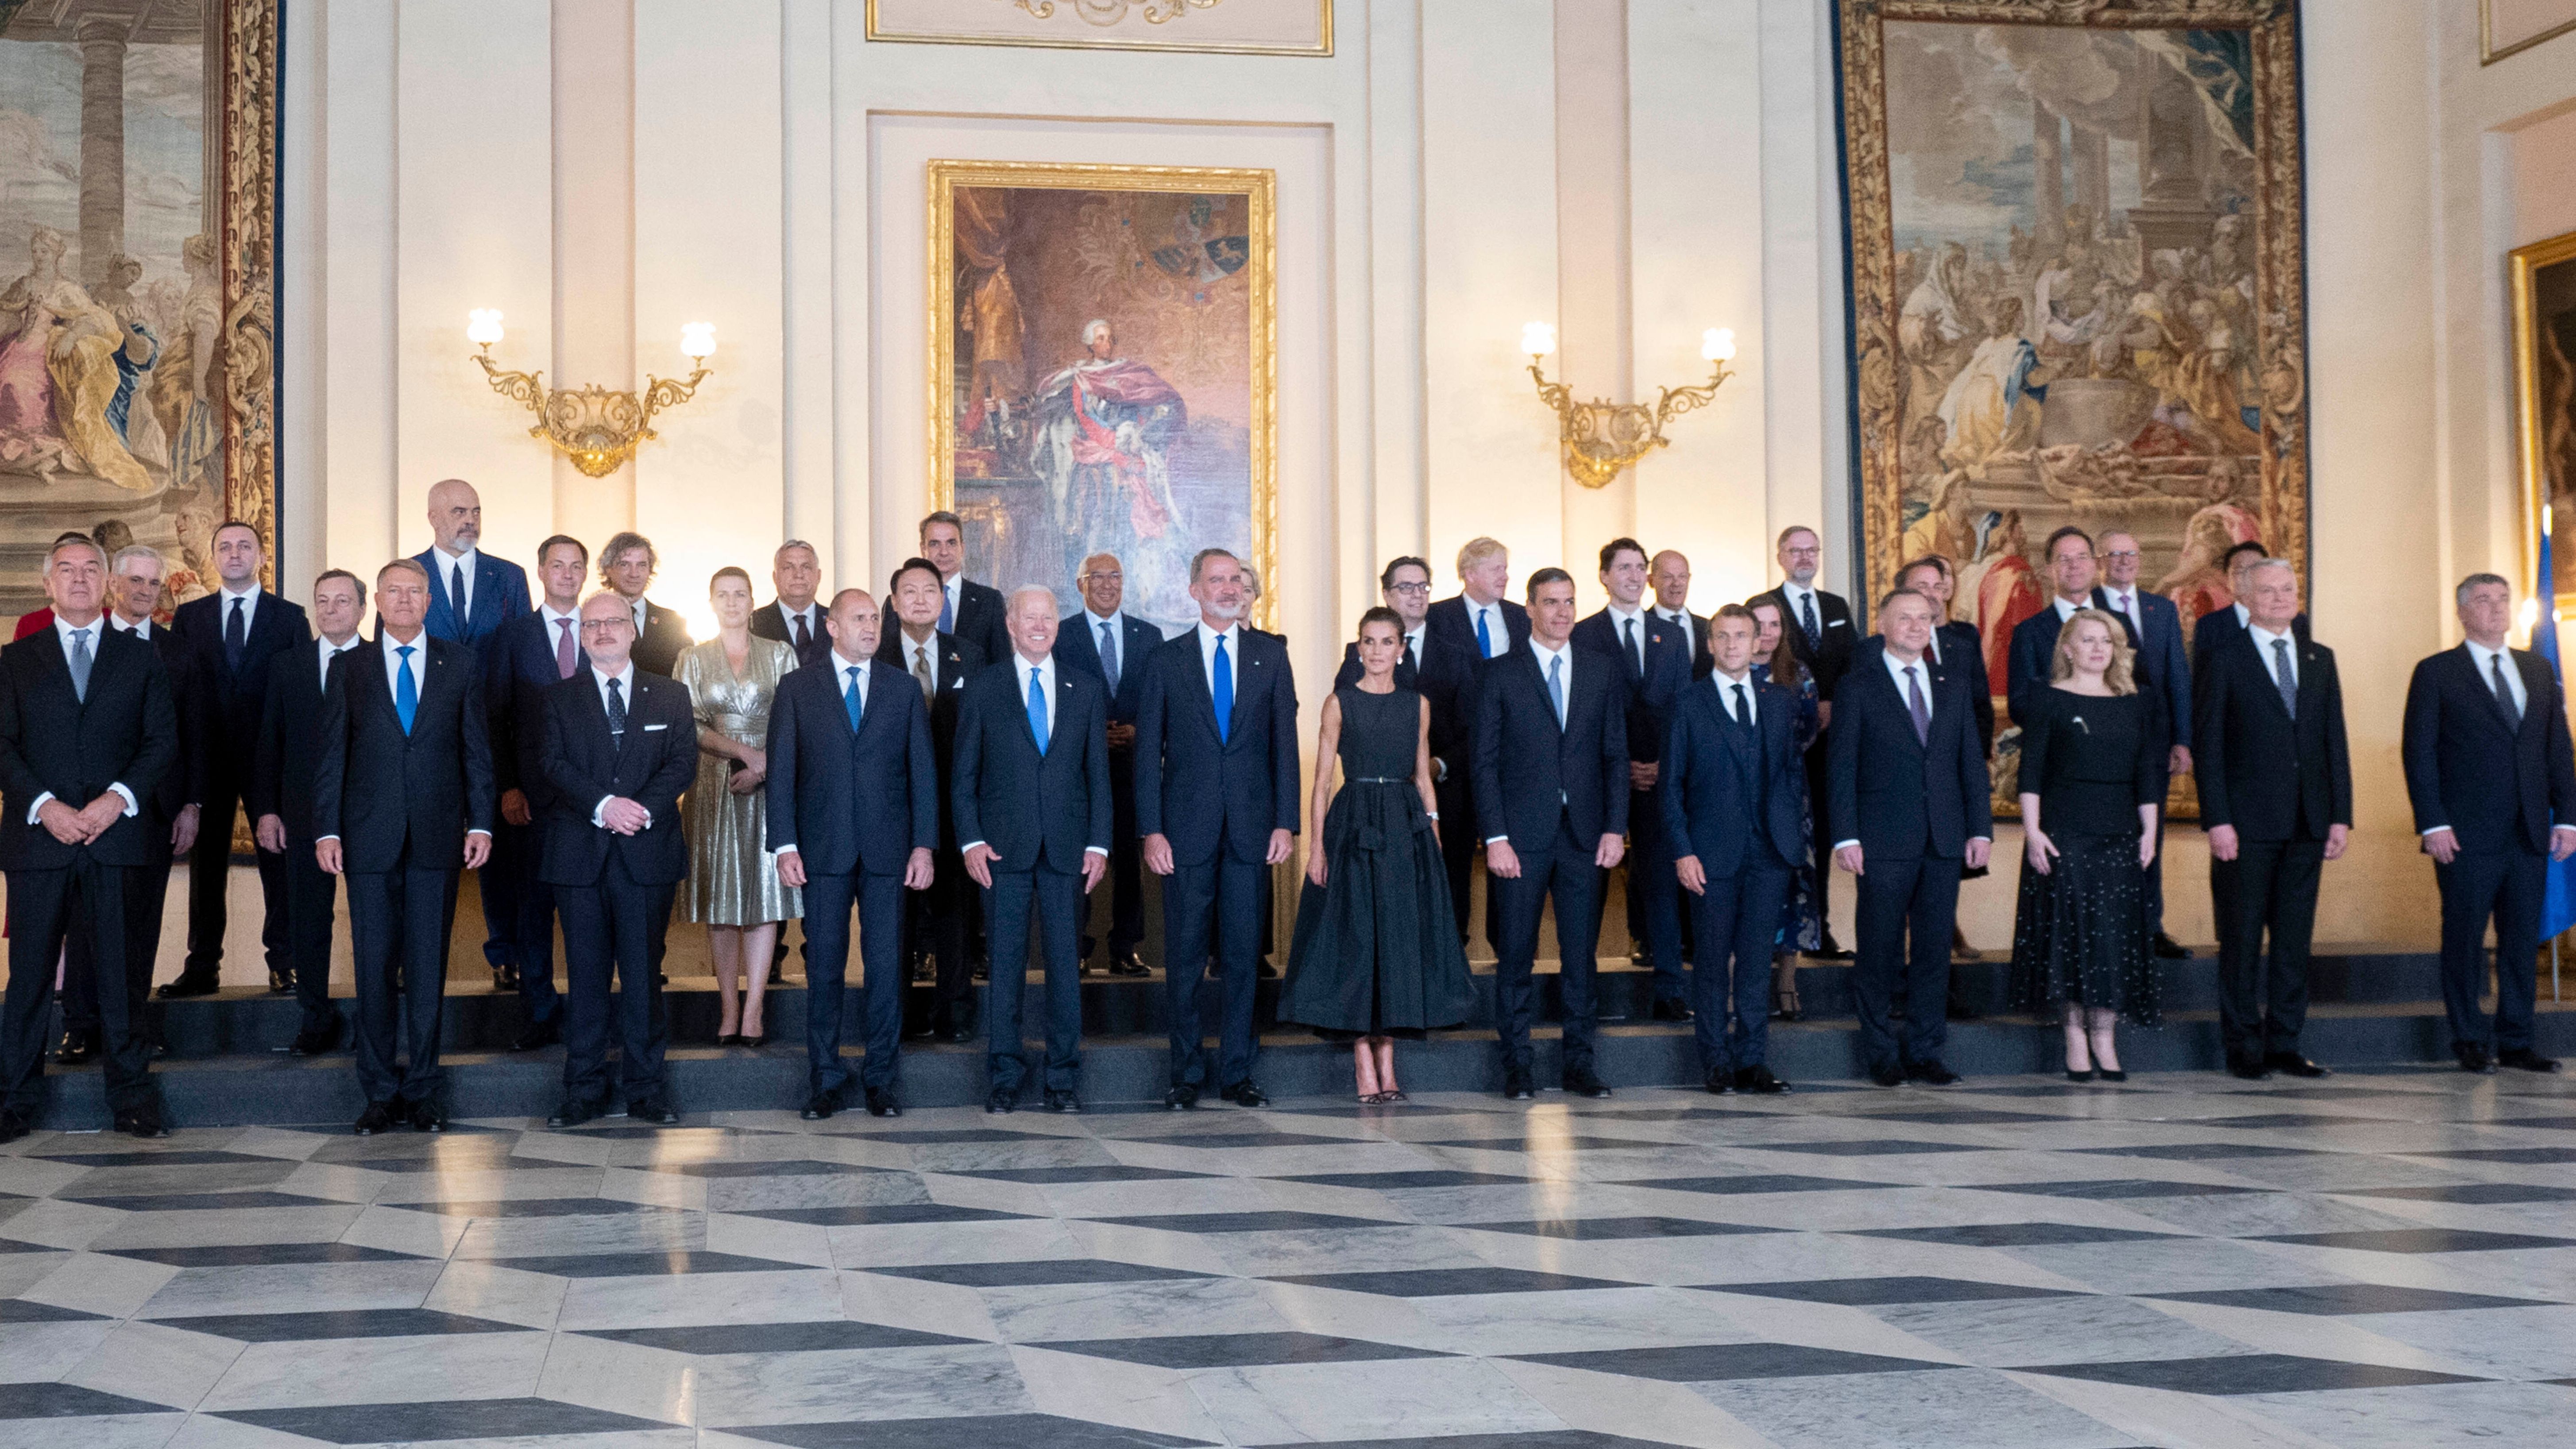 Comienza oficialmente la Cumbre de la OTAN en Madrid donde se aprobará el nuevo concepto estratégico de la Alianza